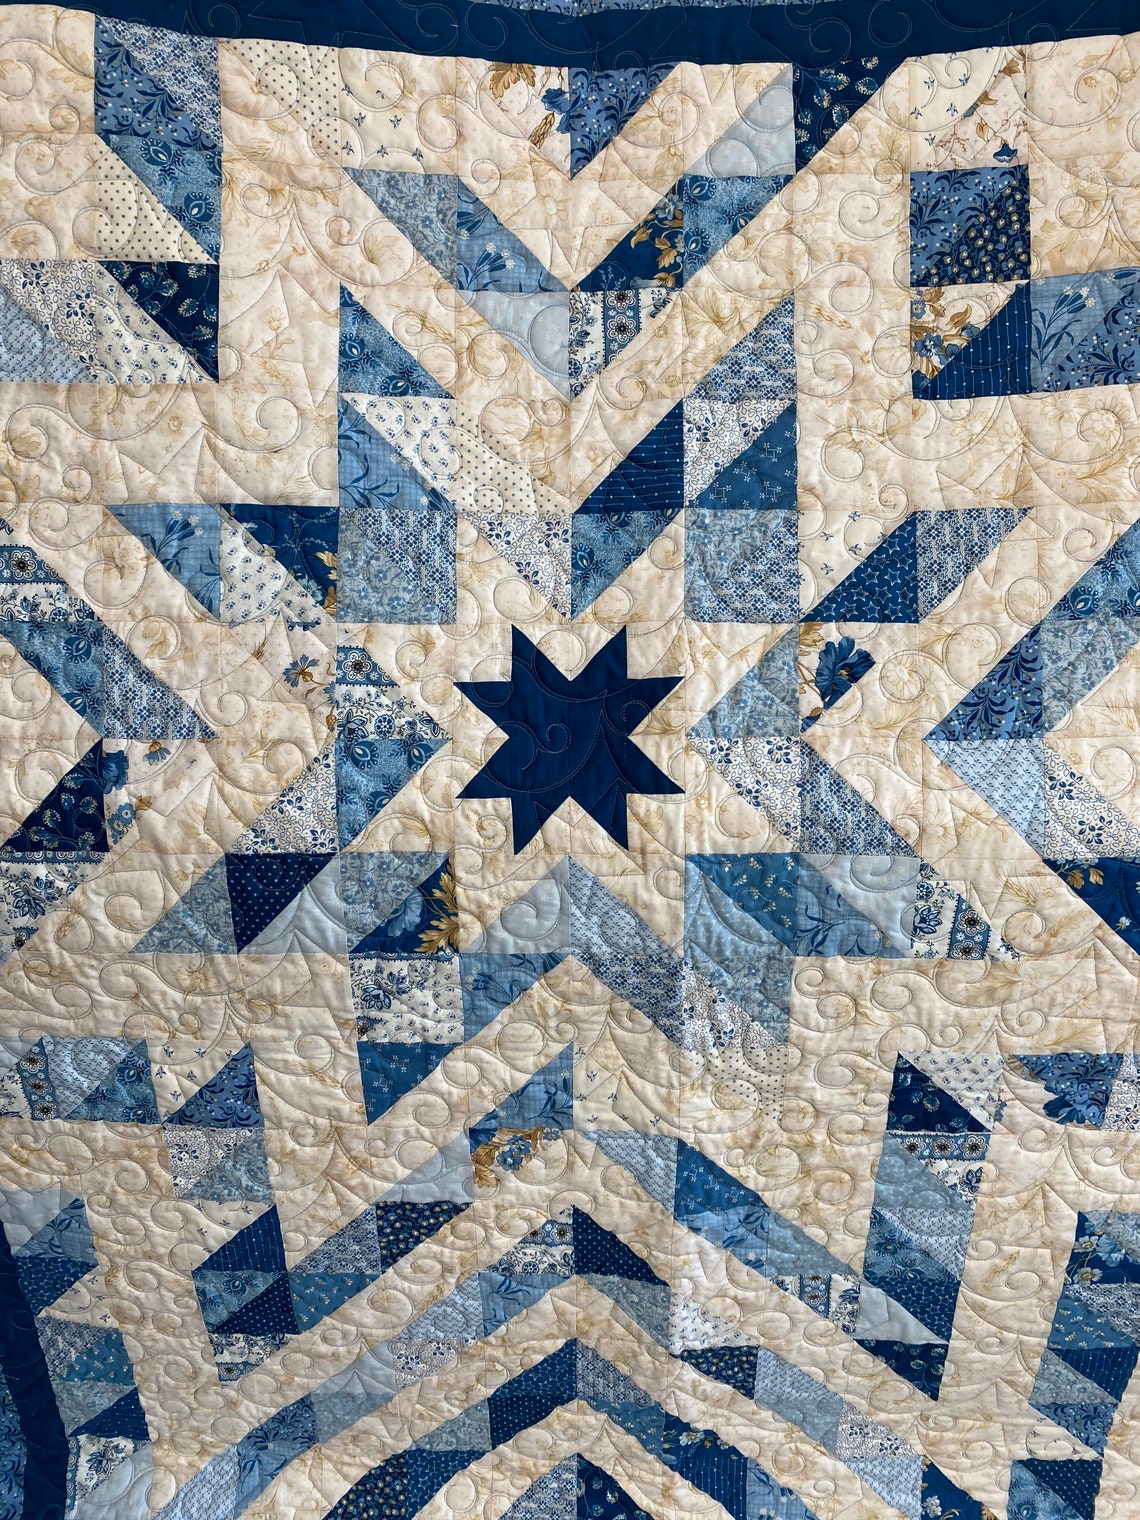 Starburst handmade quilt star quilt blue quilt throw | Etsy